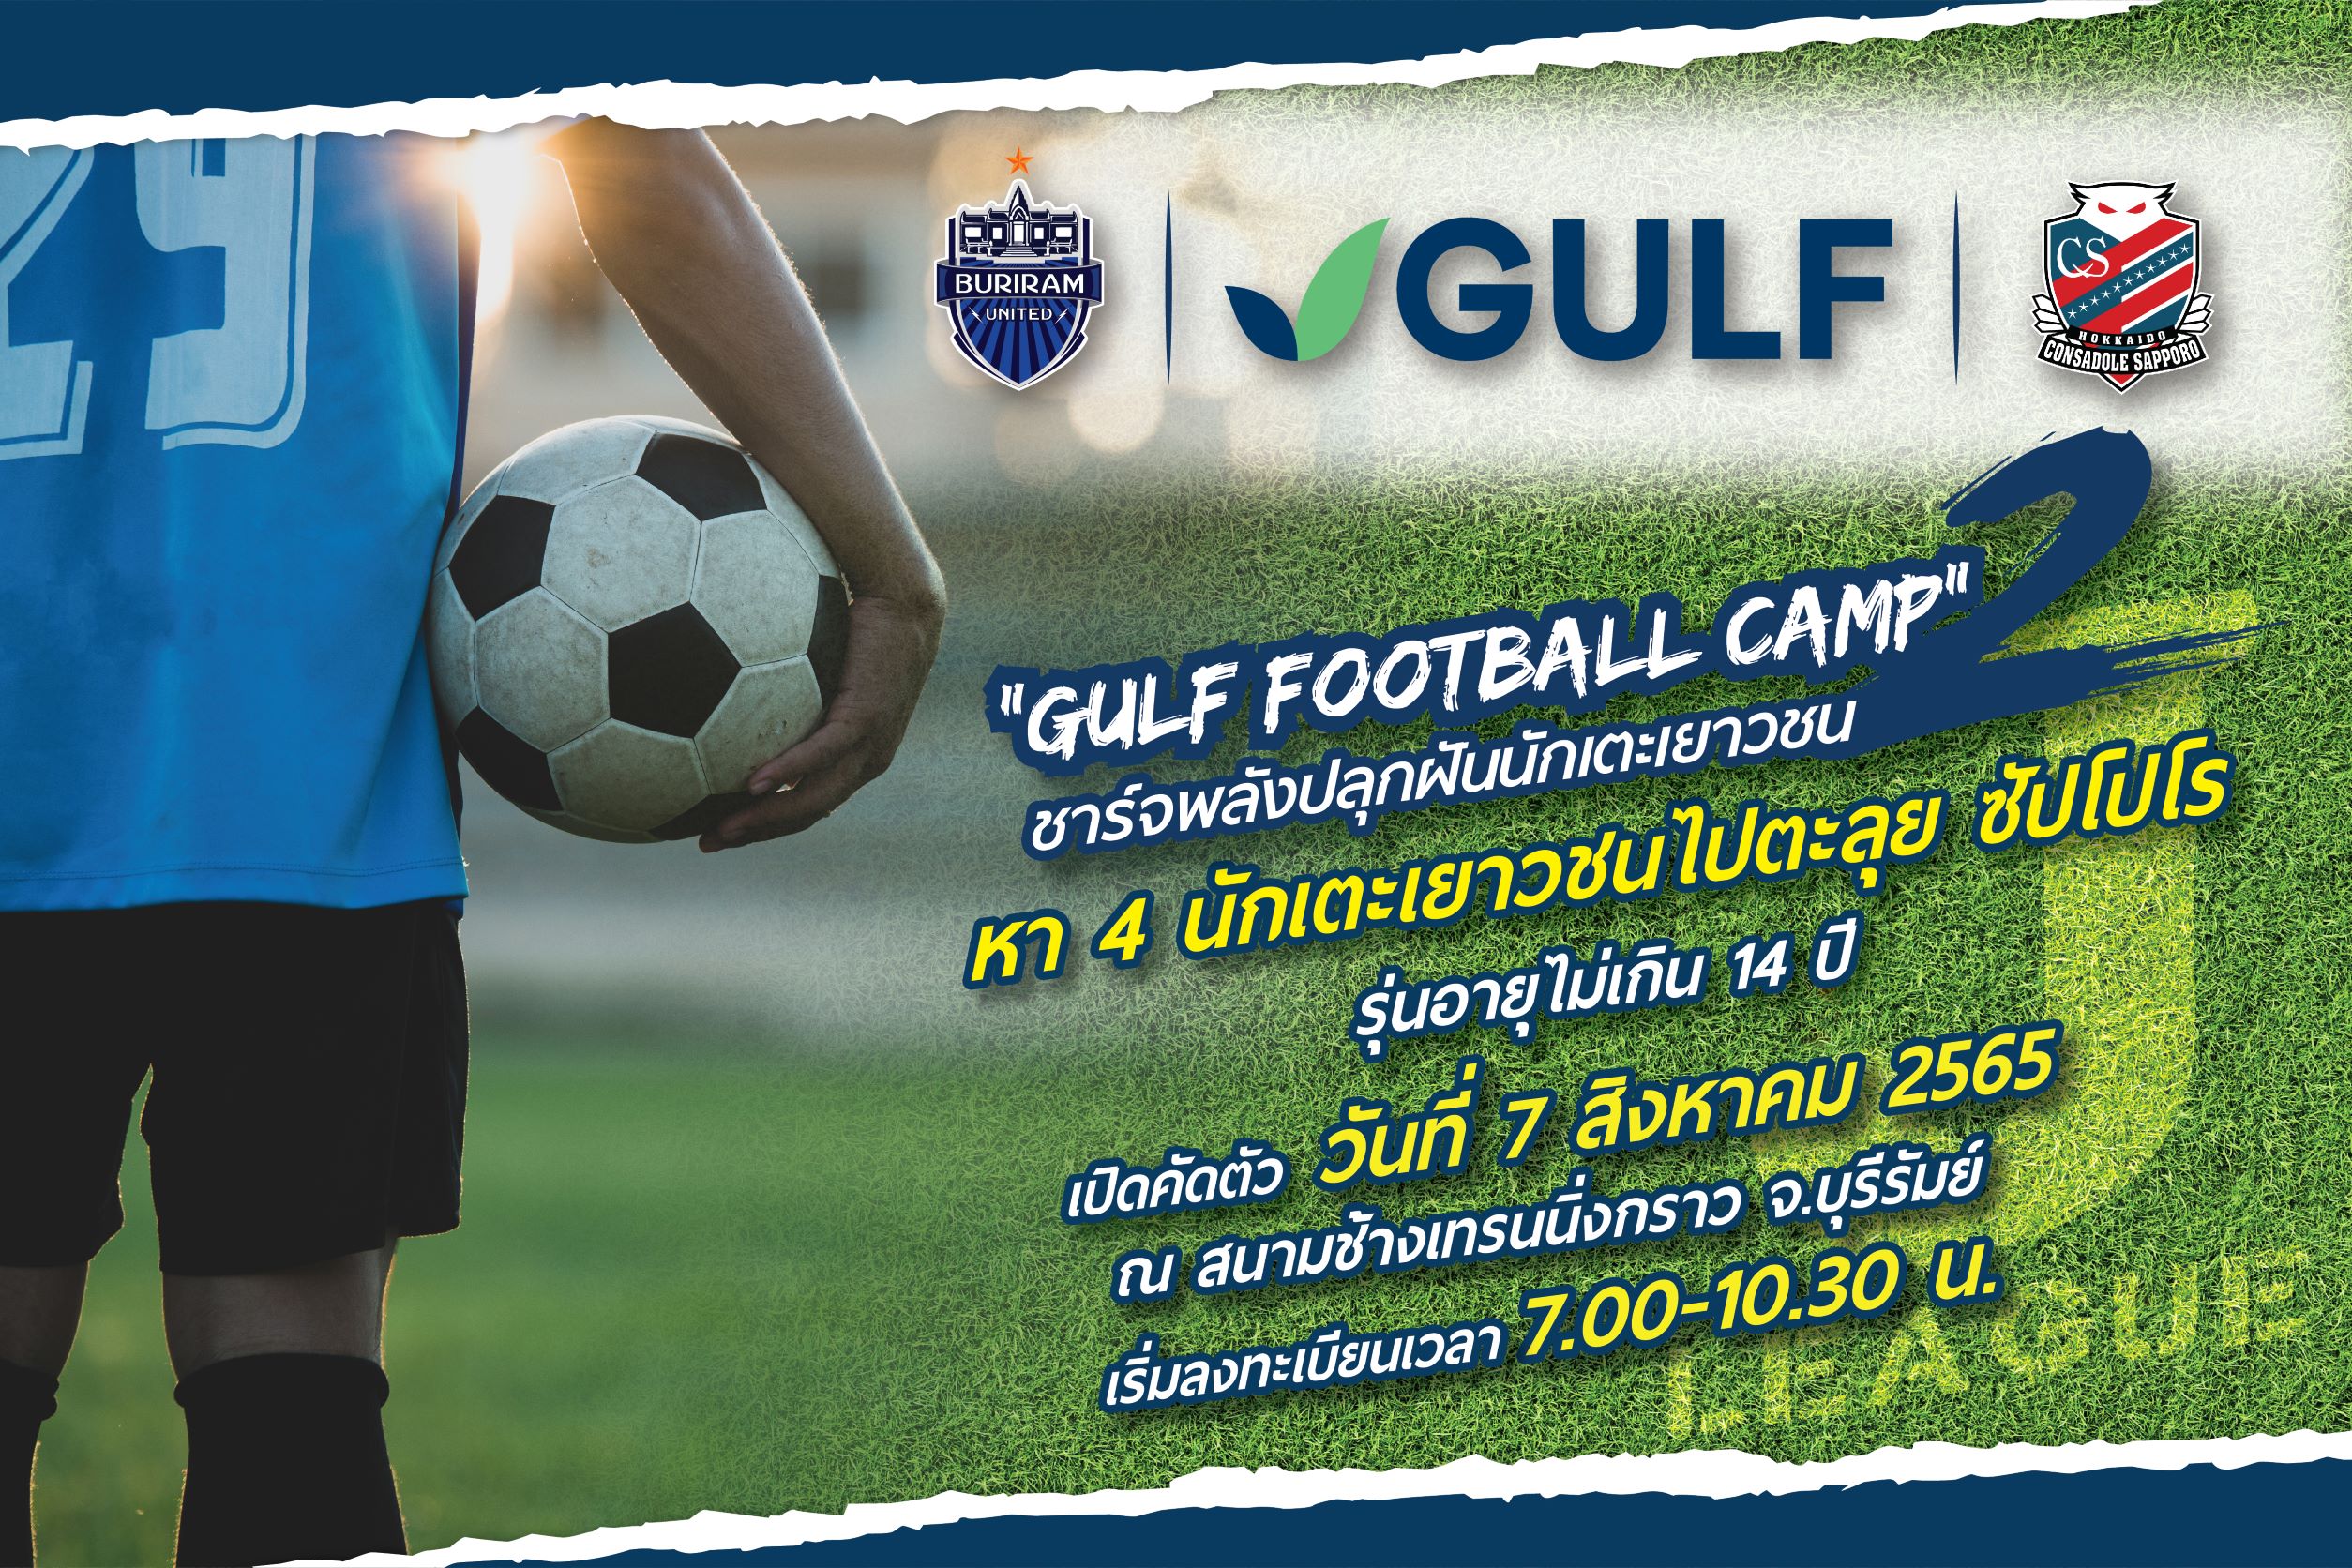 GULF เปิดโอกาสให้เยาวชนในโครงการ GULF Football Camp ปี 2 ก้าวสู่การเป็นนักฟุตบอลอาชีพ ร่วมซ้อมกับทีมซัปโปโร ณ ประเทศญี่ปุ่น